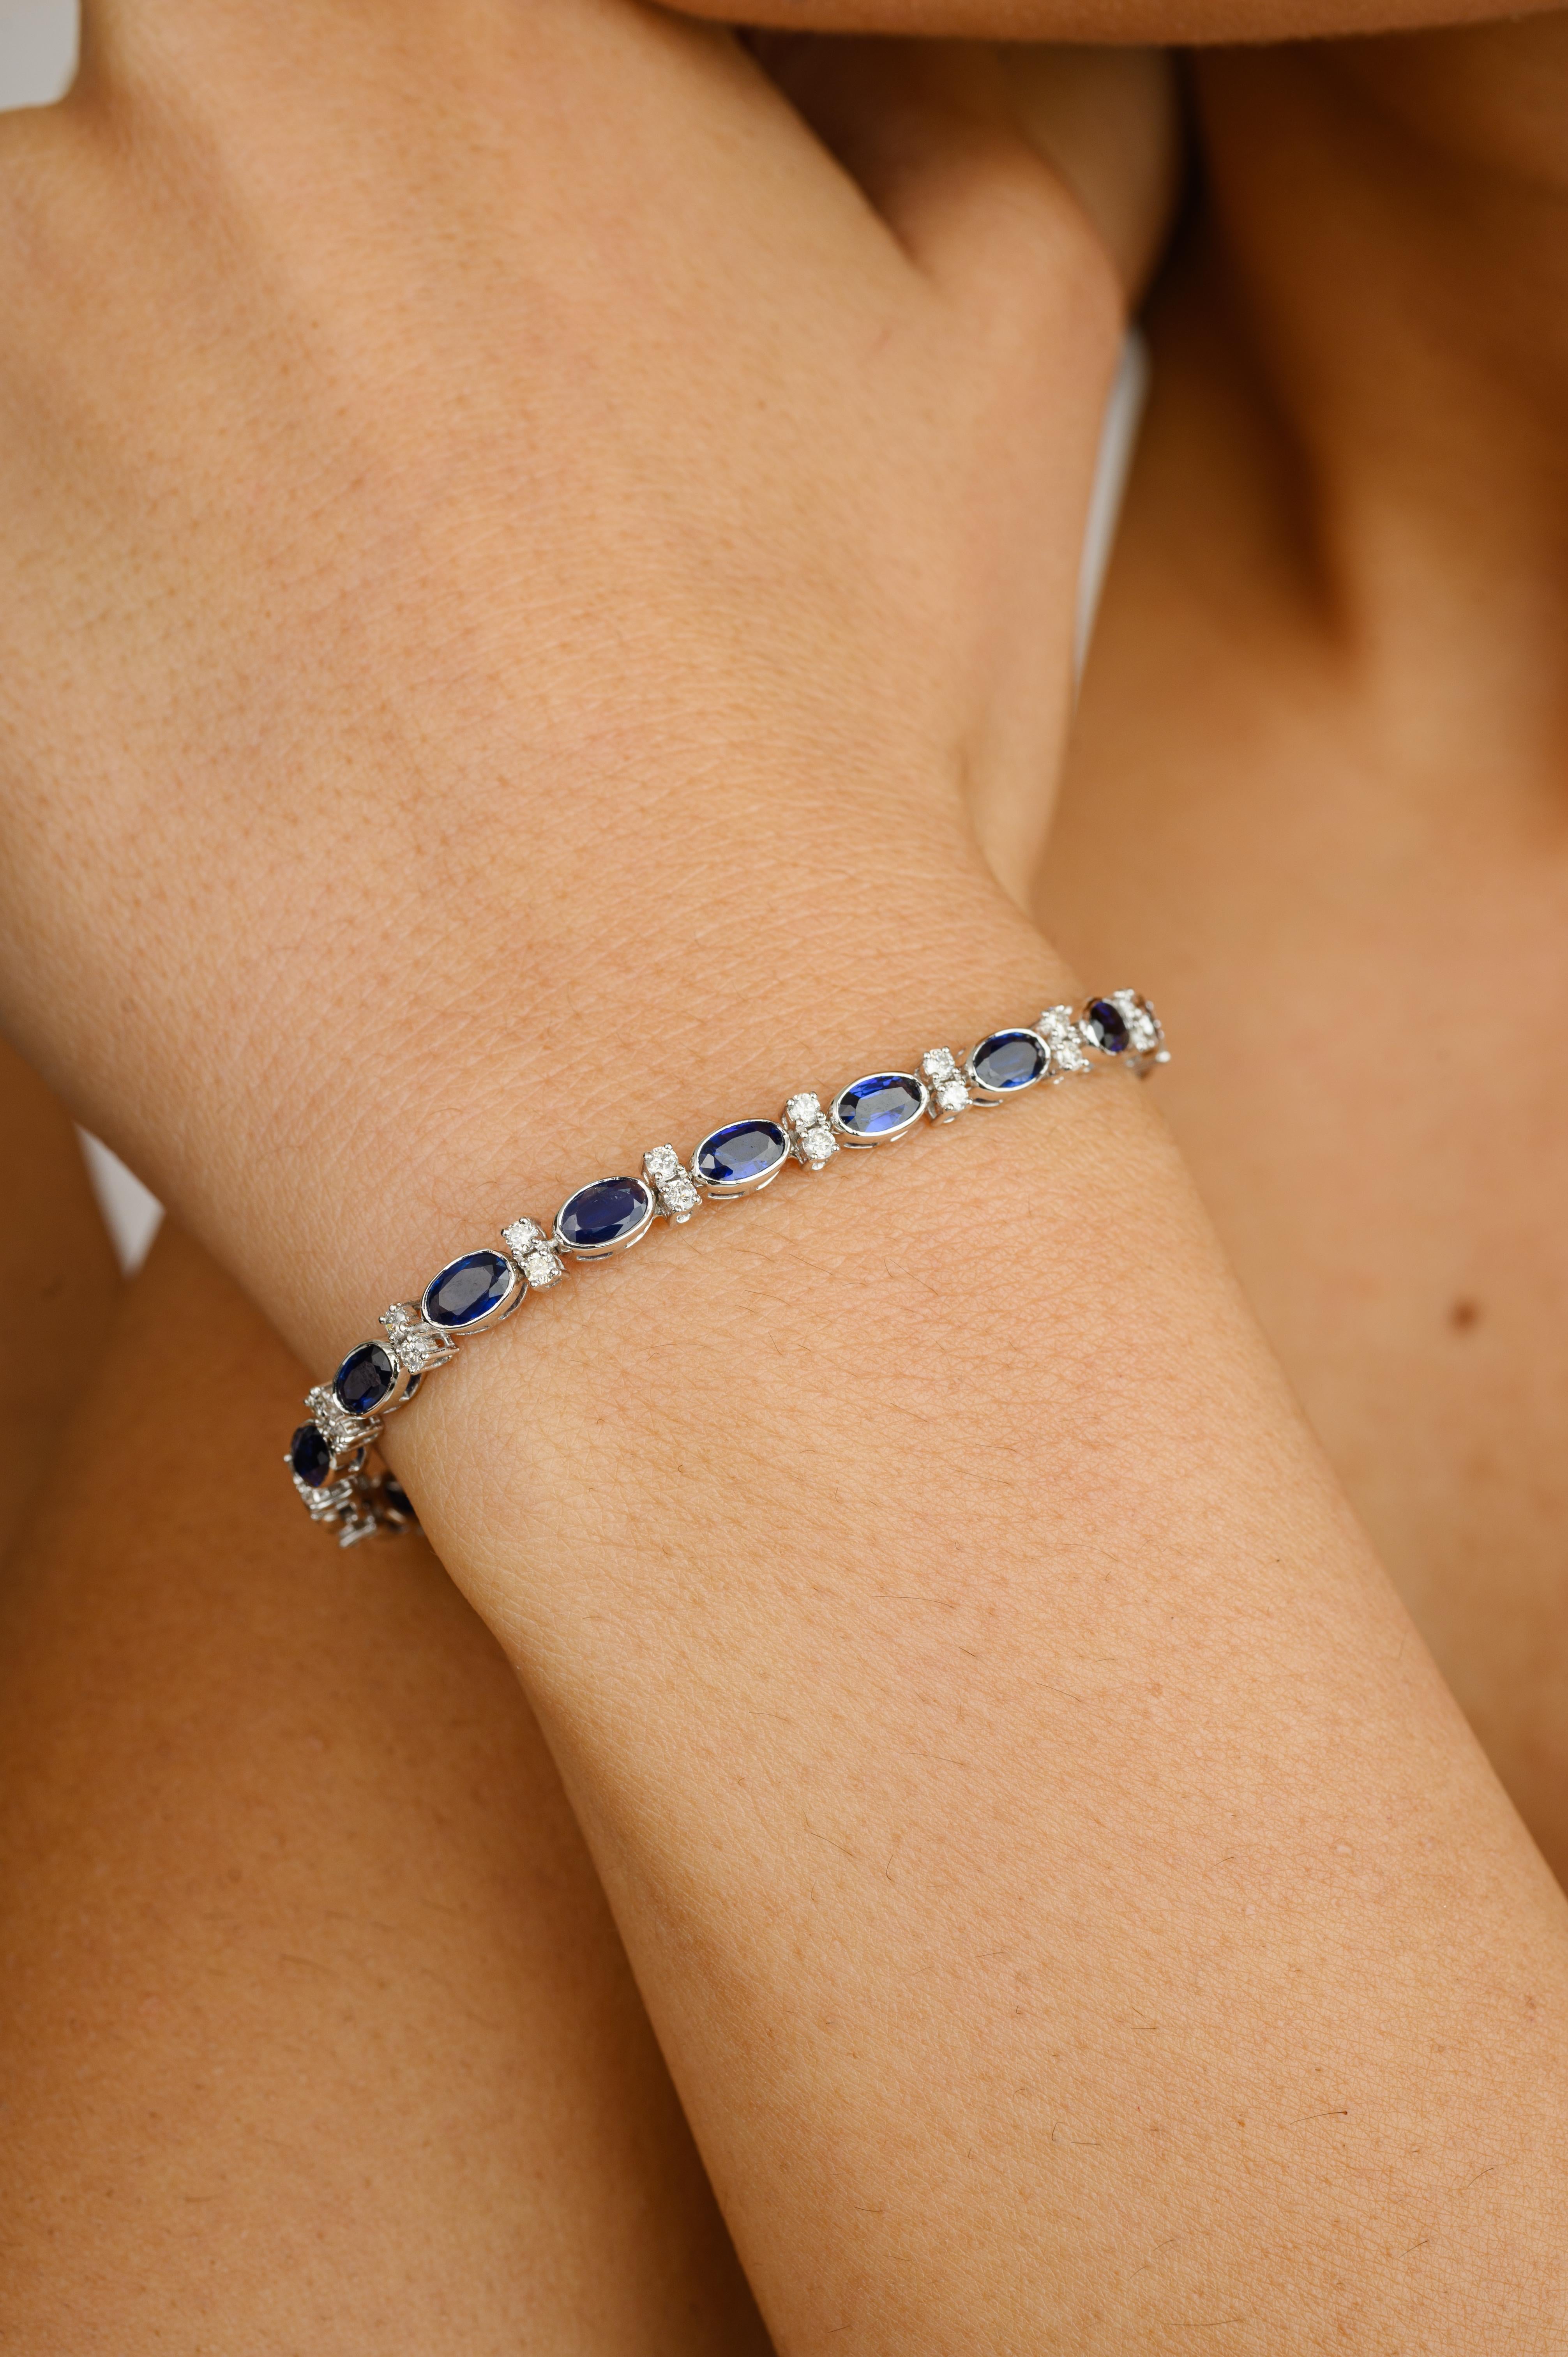 Diese 6,82 Karat natürlichen blauen Saphir und Diamant Armband  aus 18 Karat Gold präsentiert einen unendlich funkelnden, natürlichen blauen Saphir von 6,82 Karat und 0,97 Karat Diamanten. Es misst 7.25 Zoll in der Länge. 
Saphir fördert die